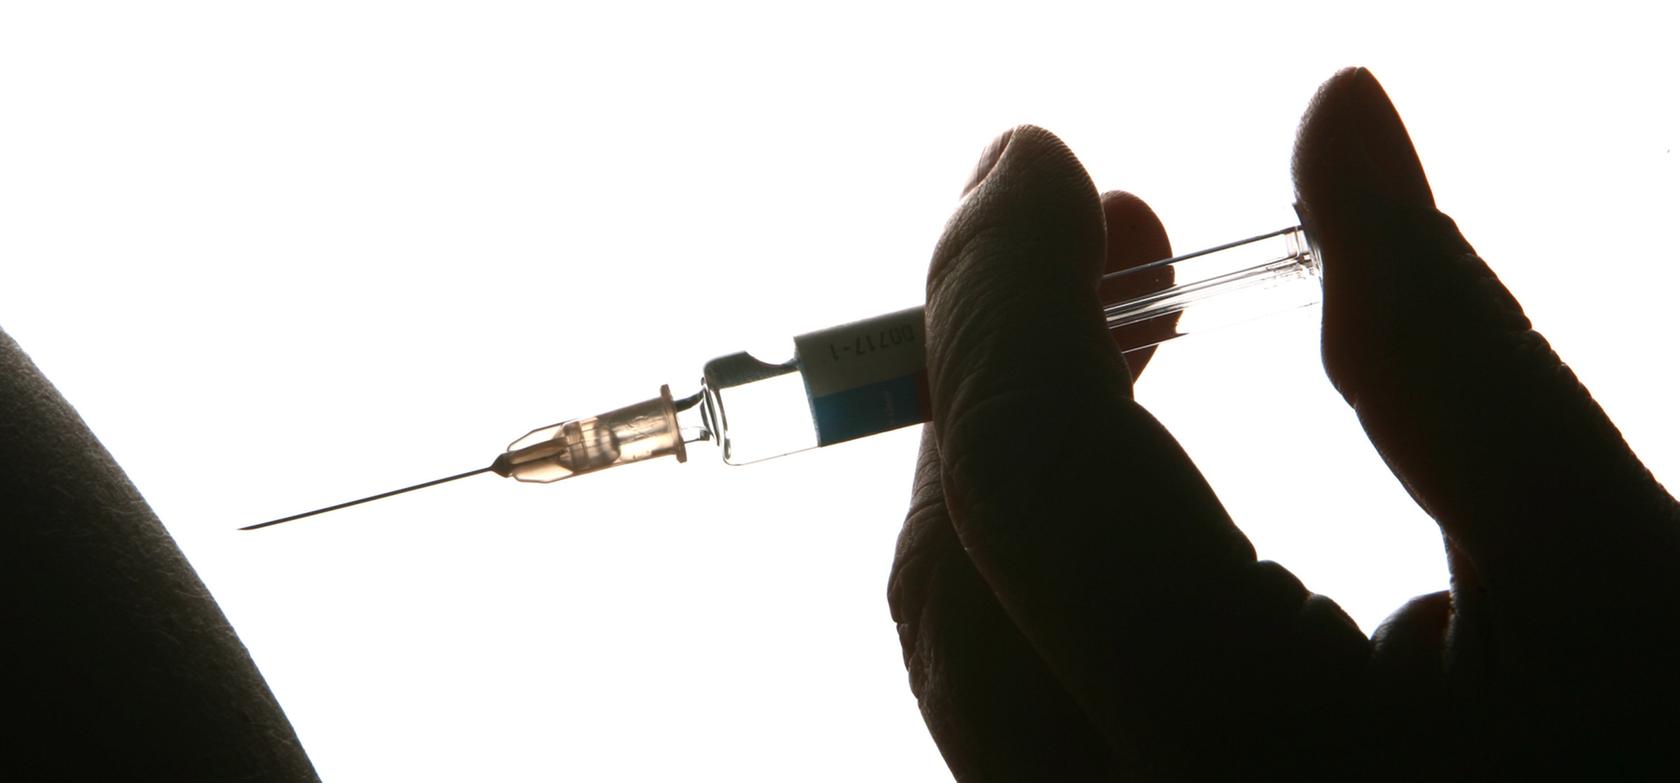 Derzeit wird eine Impfung gegen Grippe empfohlen, um eine Doppelinfektion zu verhindern.